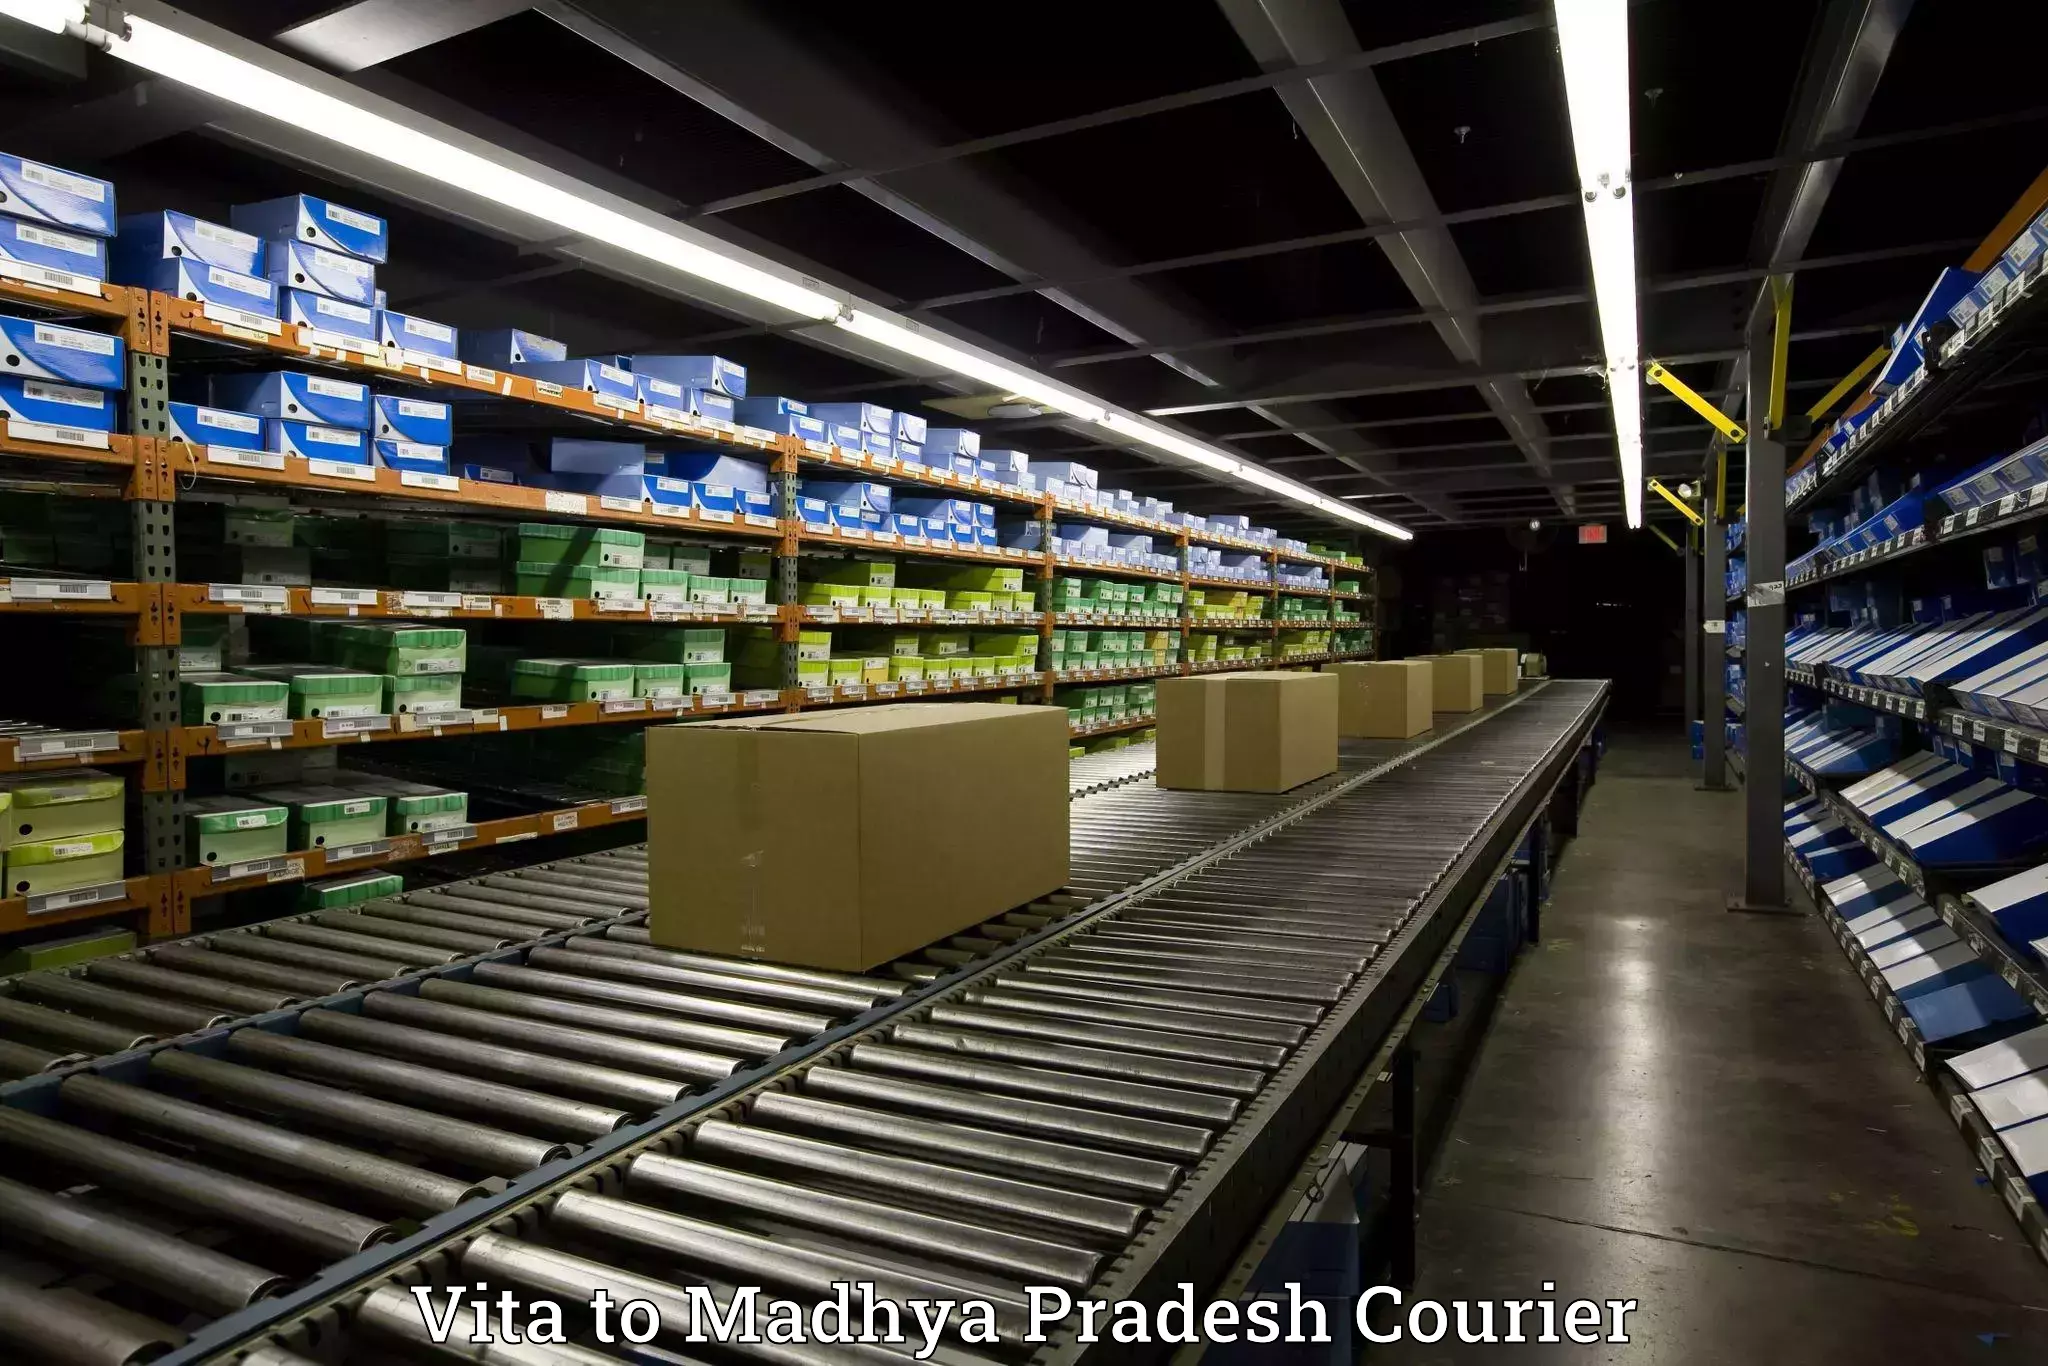 Moving and packing experts Vita to Madhya Pradesh